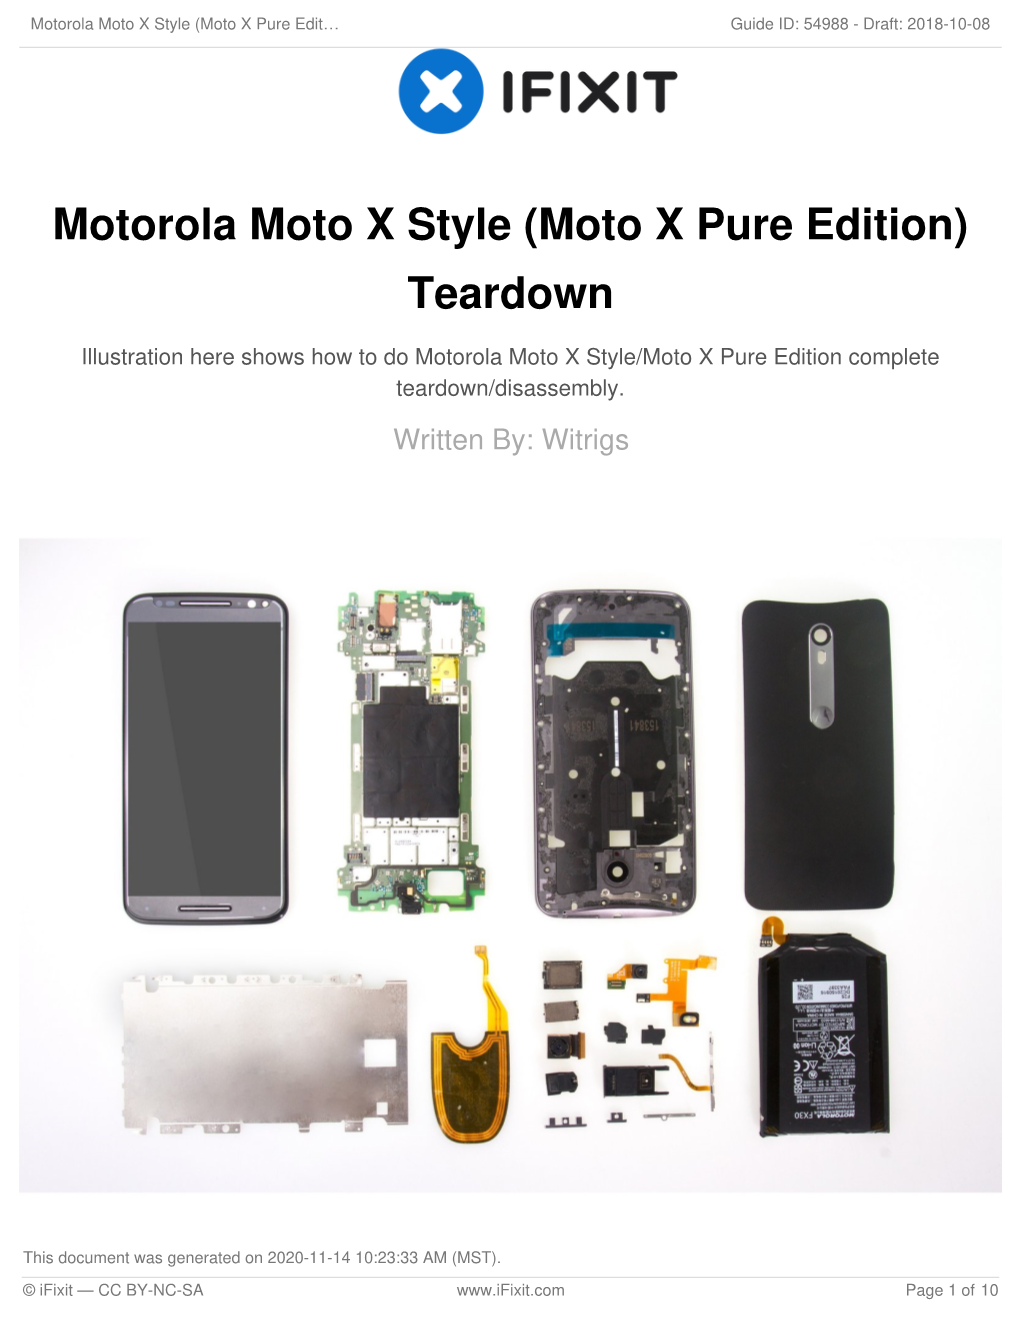 Motorola Moto X Style (Moto X Pure Edition) Teardown